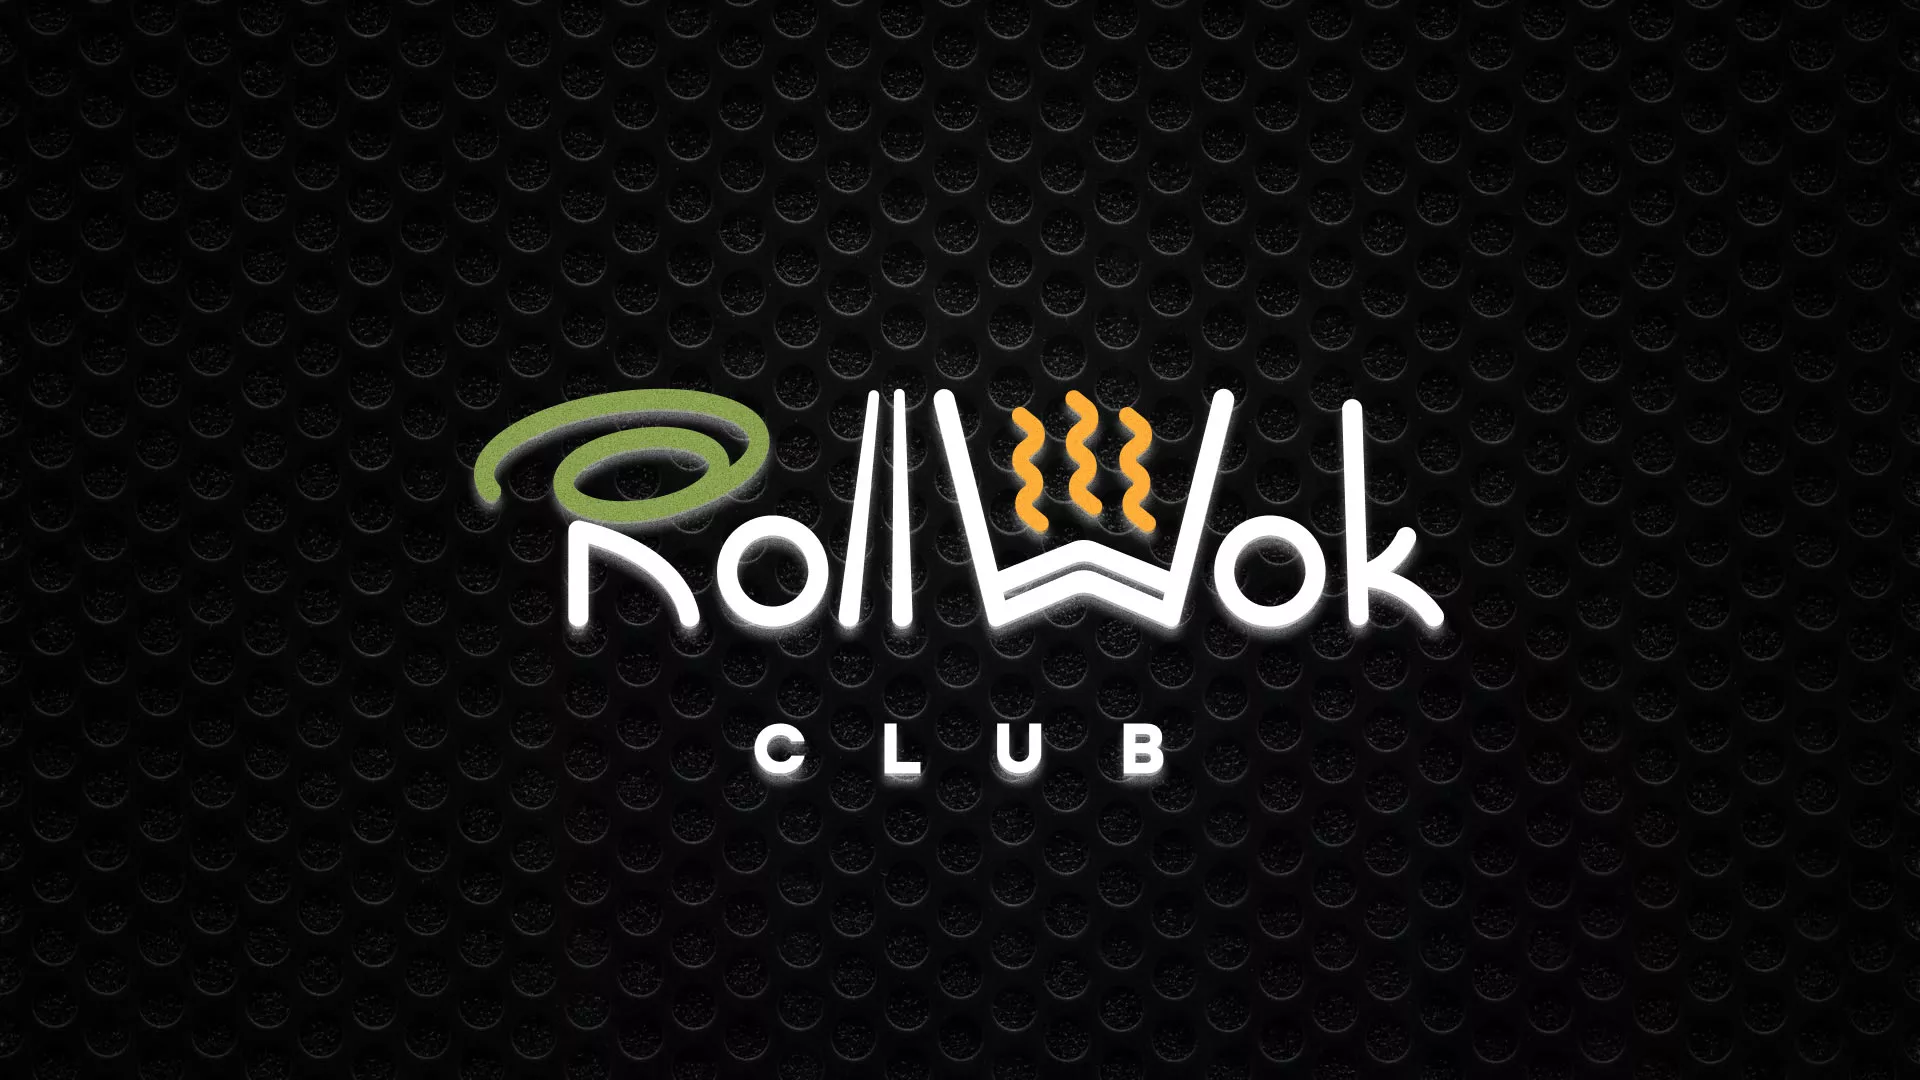 Брендирование торговых точек суши-бара «Roll Wok Club» в Томске